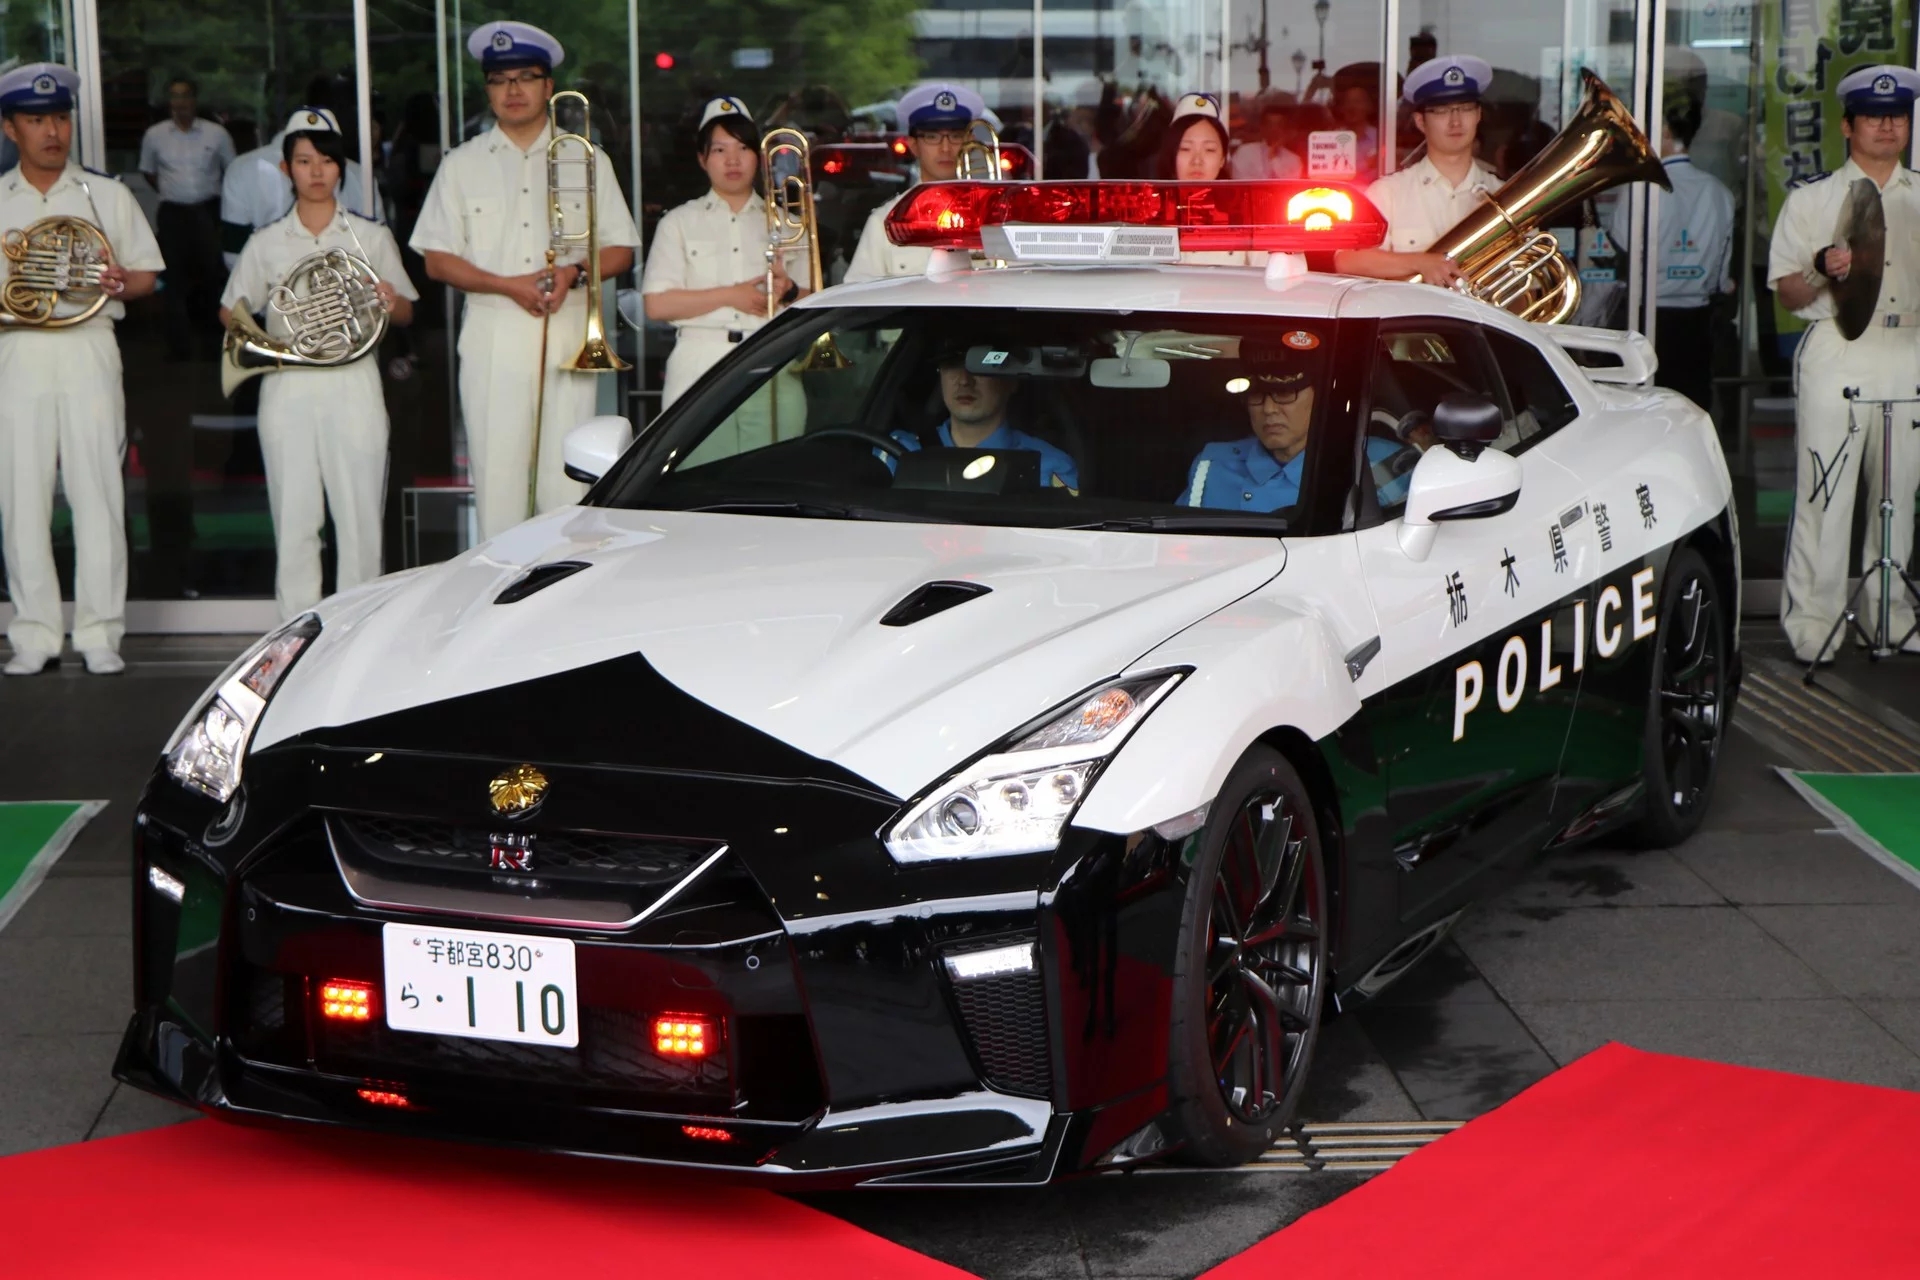 “بالصور” نيسان GT-R تدخل الخدمة رسميا بأسطول الشرطة اليابانية